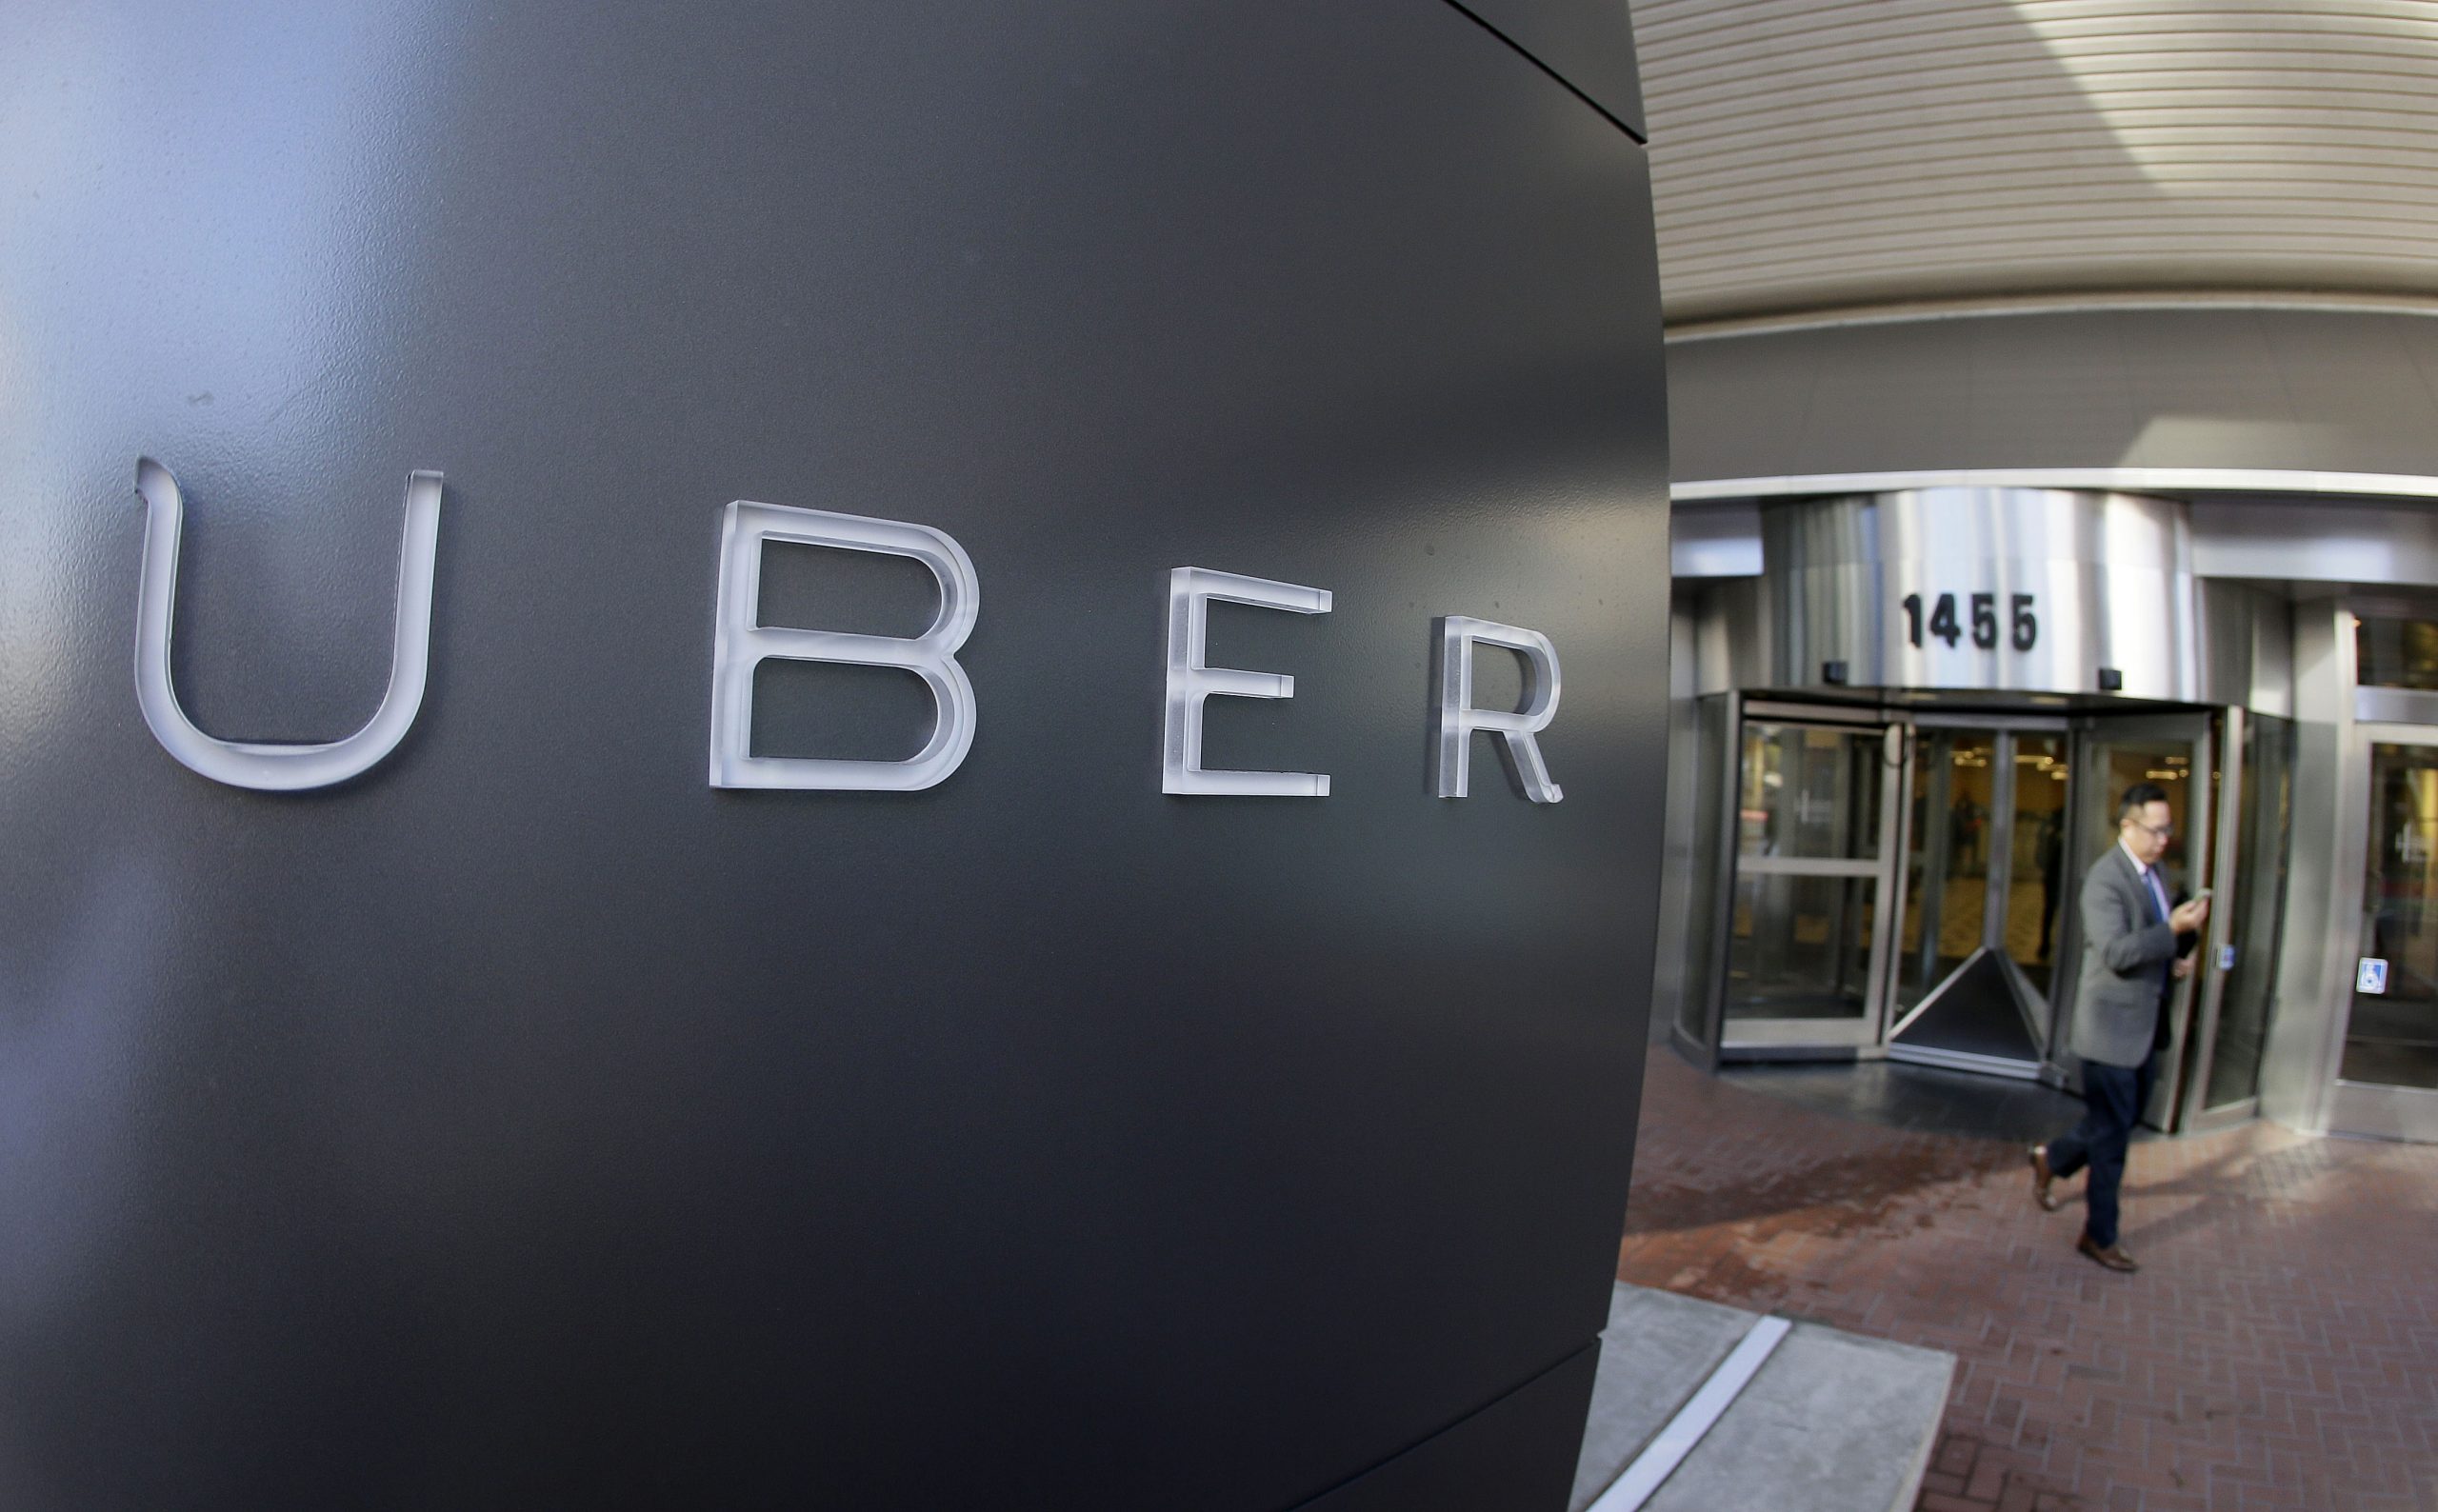 Uber divulga acidentalmente informações de 700 condutores nos EUA